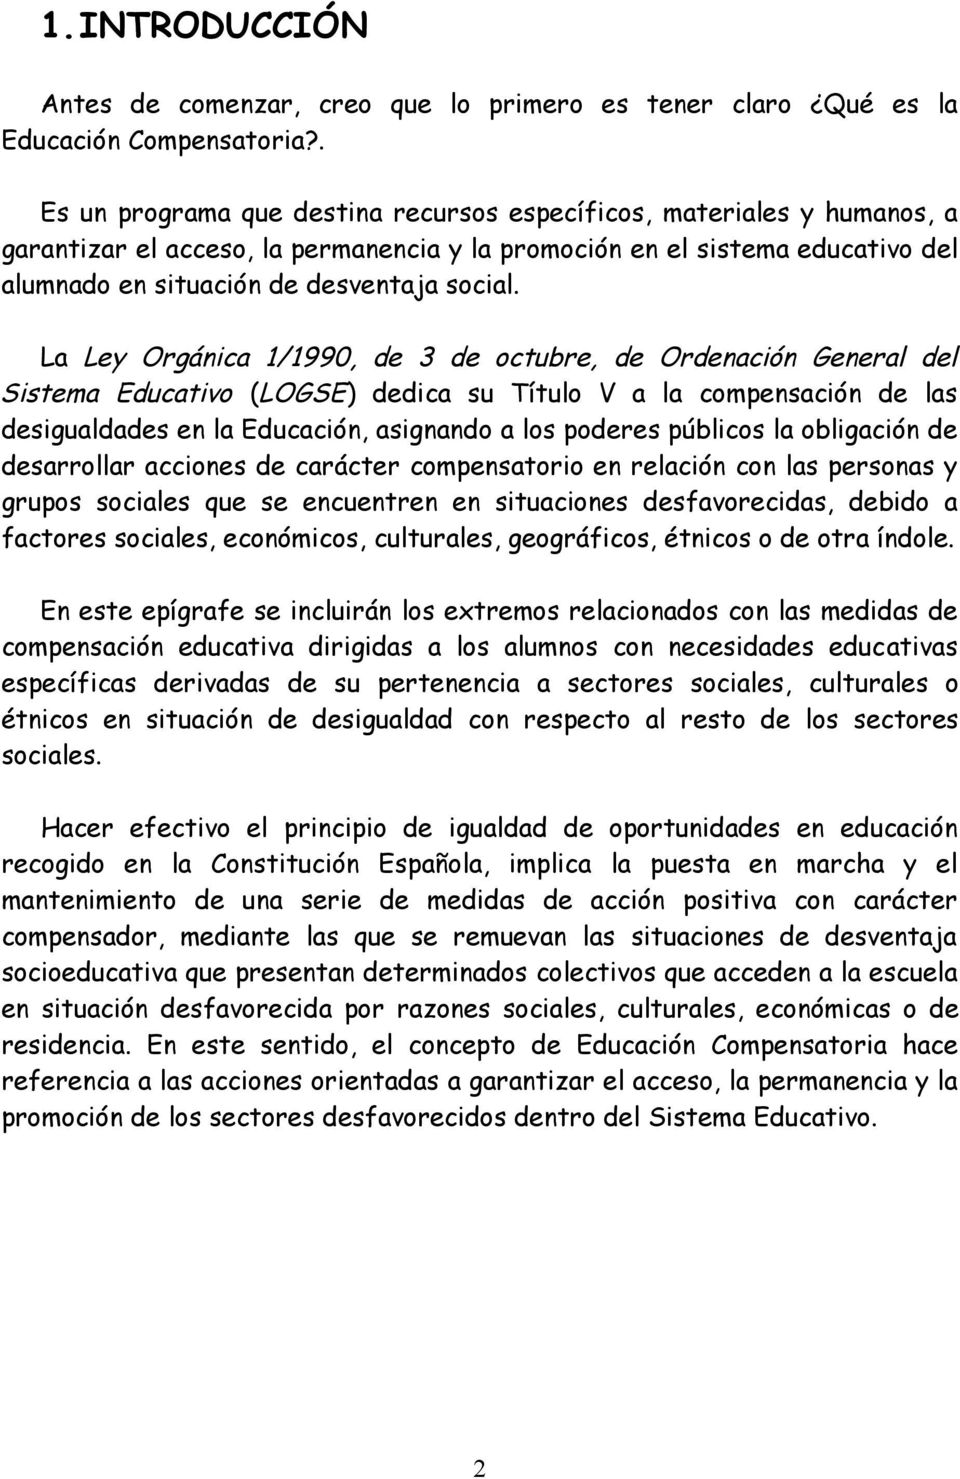 La Ley Orgánica 1/1990, de 3 de octubre, de Ordenación General del Sistema Educativo (LOGSE) dedica su Título V a la compensación de las desigualdades en la Educación, asignando a los poderes